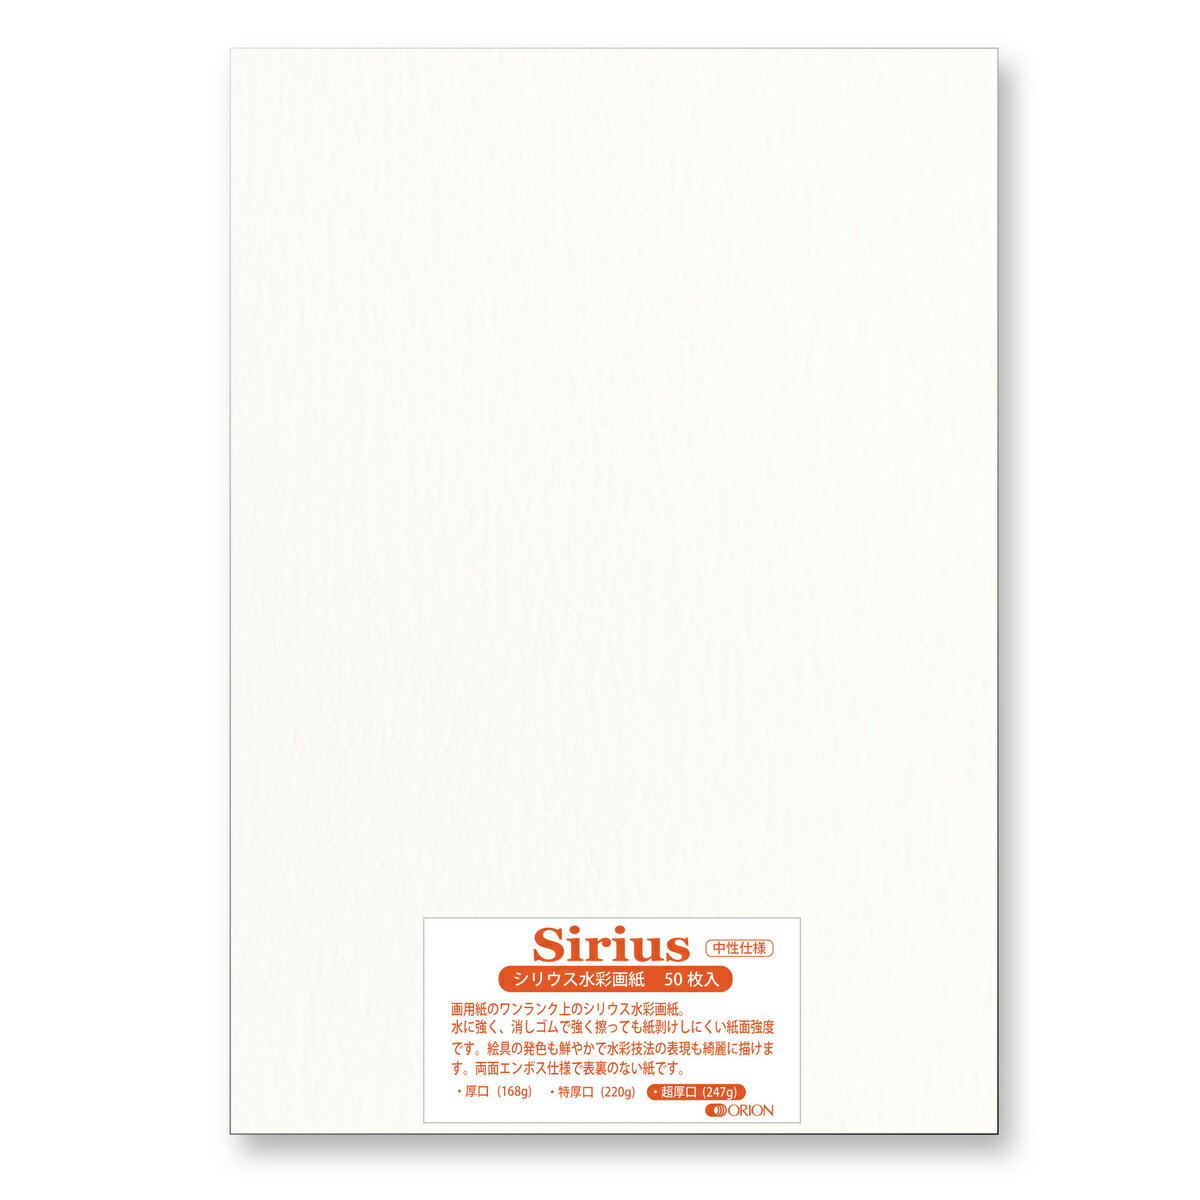 シリウス水彩画紙は水彩適性の高い画用紙でとてもコスパが良く、練習用から本番用まで幅広く愛用されています。紙の色はナチュラルホワイトで表裏どちらでも描けます。水の弾きが強めなので水分を浸み込ませてから絵具を乗せることをお勧めします。シリウス水彩画紙は水彩適性の高い画用紙でとてもコスパが良く、練習用から本番用まで幅広く愛用されています。紙の色はナチュラルホワイトで表裏どちらでも描けます。水の弾きが強めなので水分を浸み込ませてから絵具を乗せることをお勧めします。